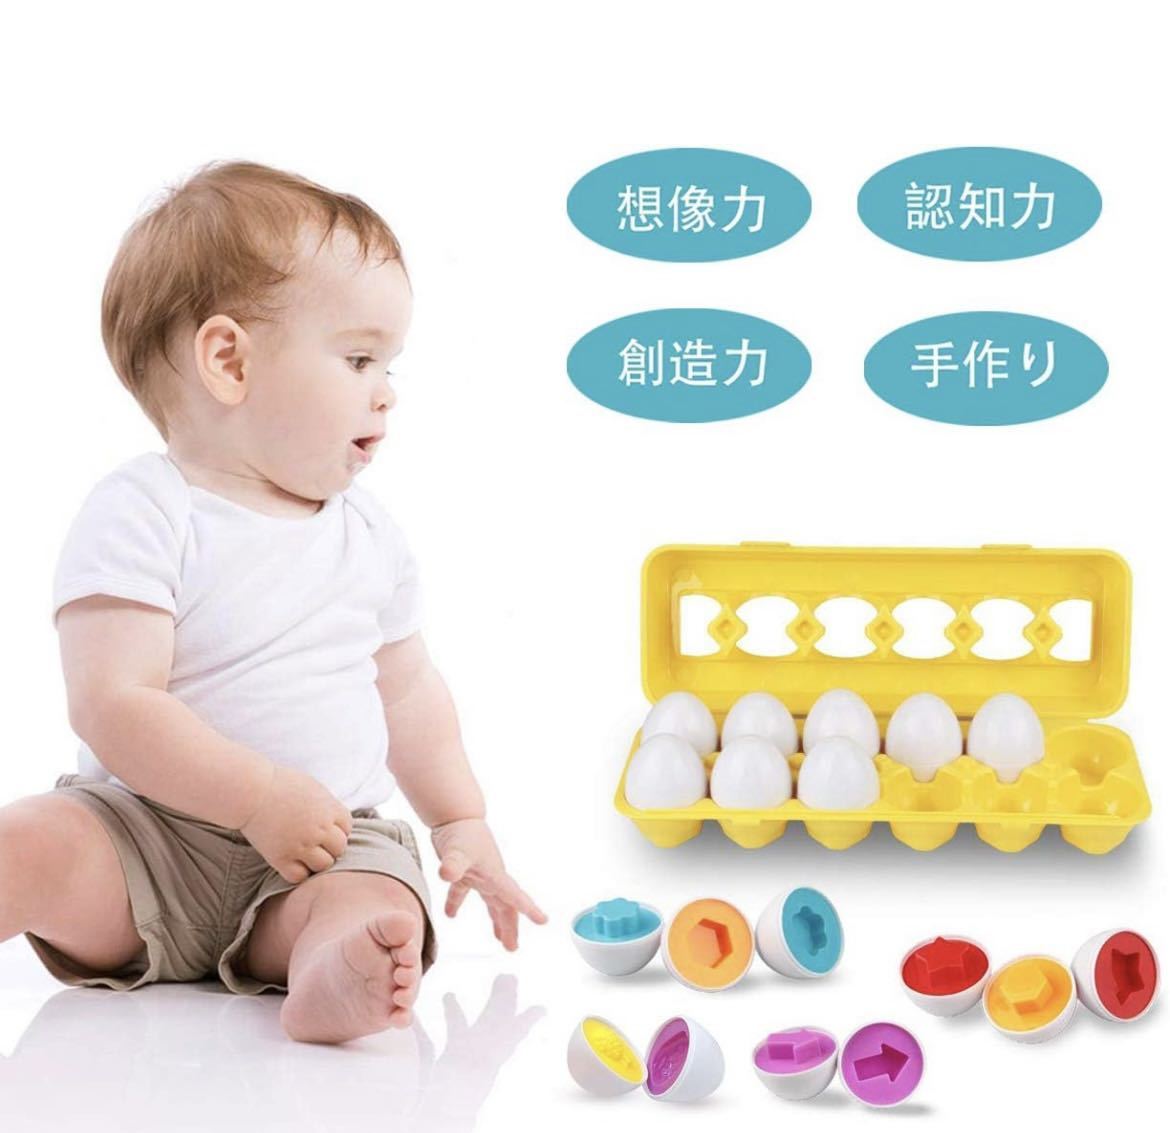 モンテッソーリ マッチング卵24ピースセット形、分類認識スキル 数字の認識 学習玩具卵24個 ベビー用品 おもちゃ _画像3